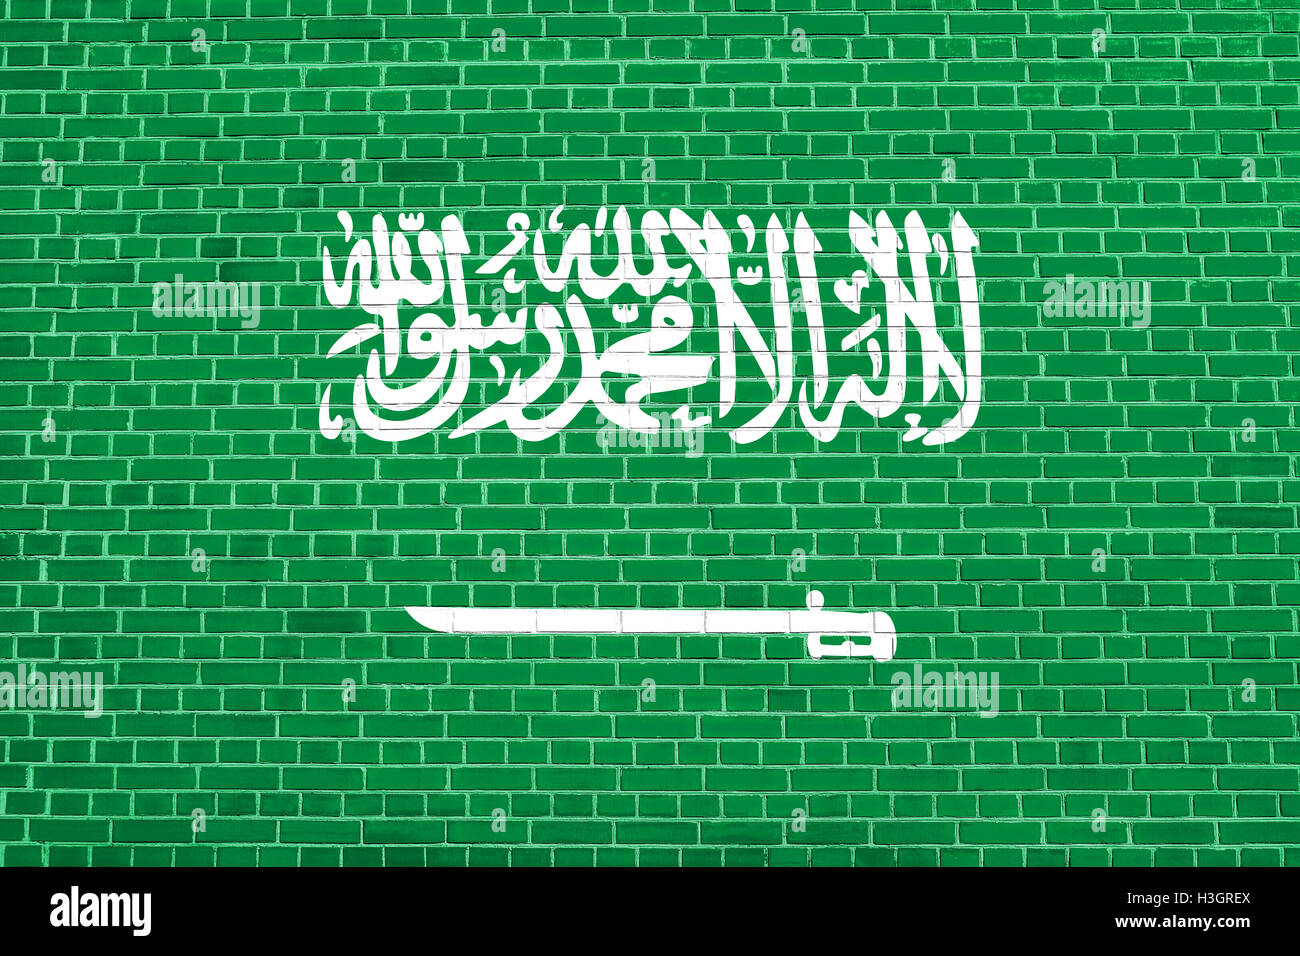 Bandera oficial nacional de Arabia Saudita. Símbolo patriótico, banner, elemento de fondo. La bandera de Arabia Saudita sobre pared de ladrillo textura Foto de stock